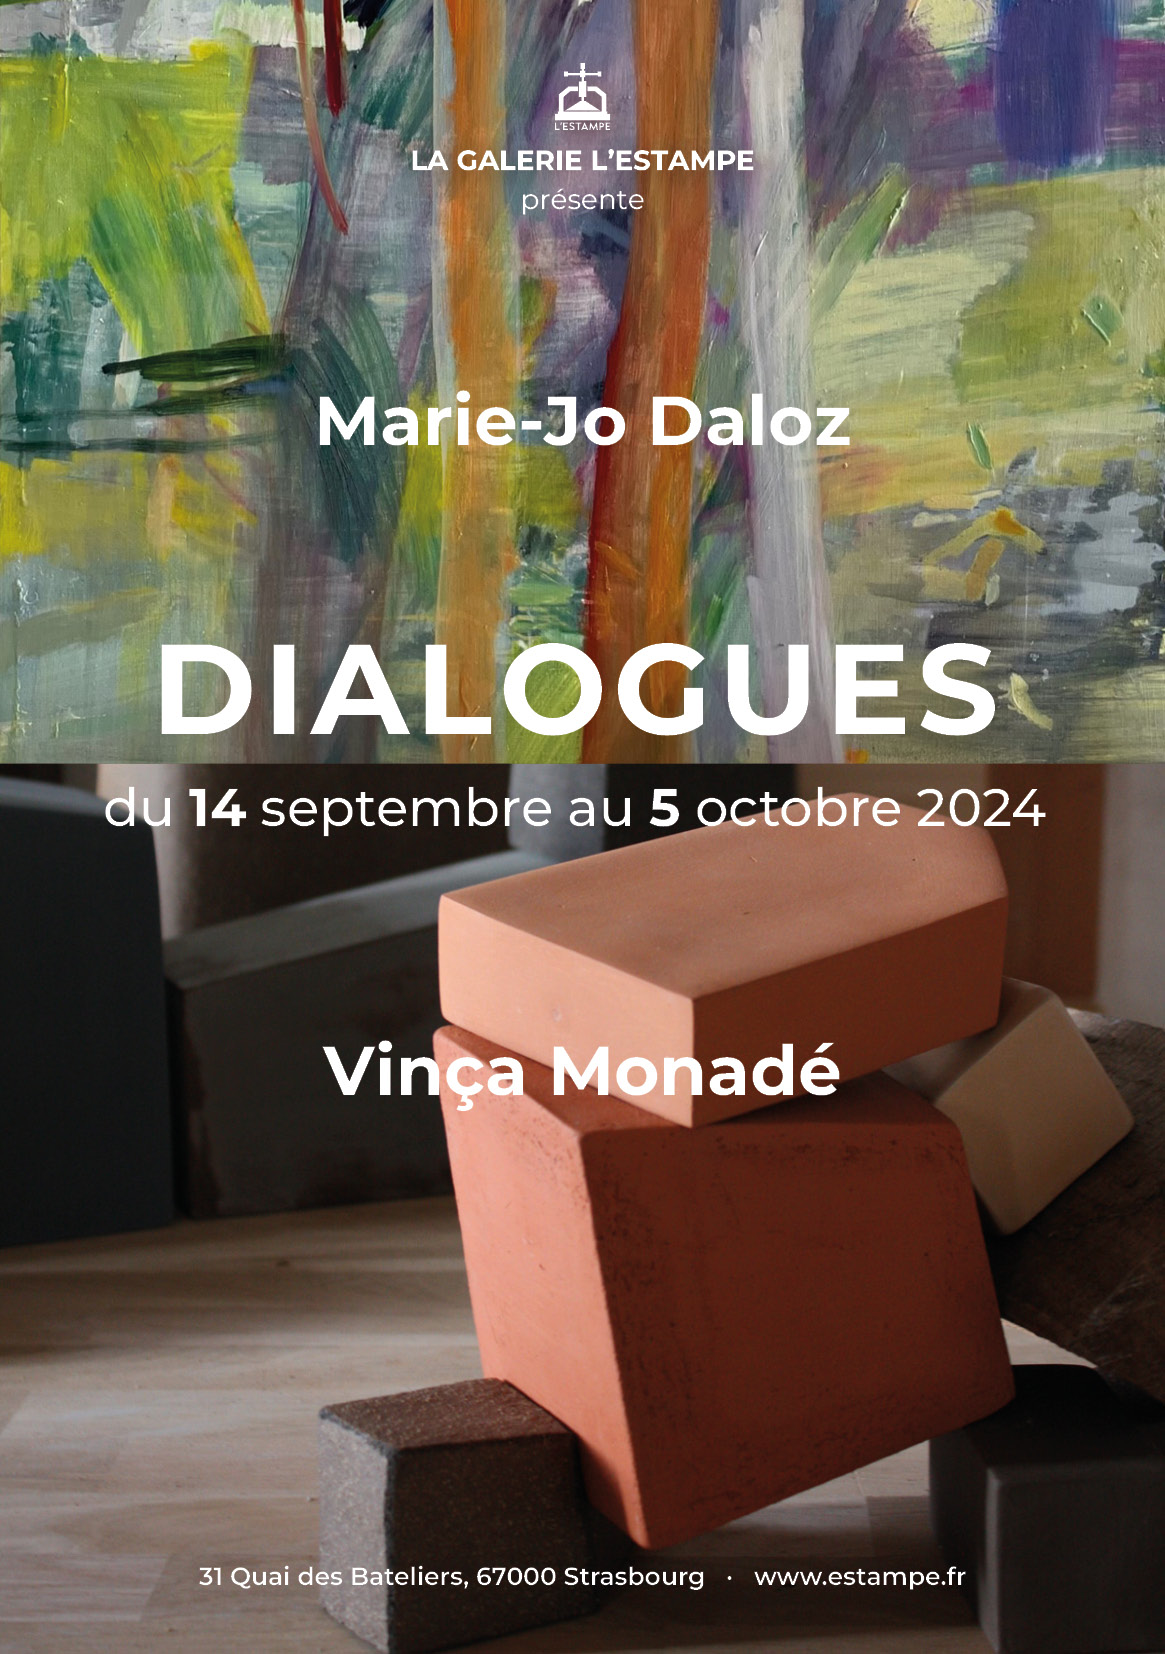 Marie-Jo Daloz et Vinça Monadé exposition 2024 à la galerie L'Estampe